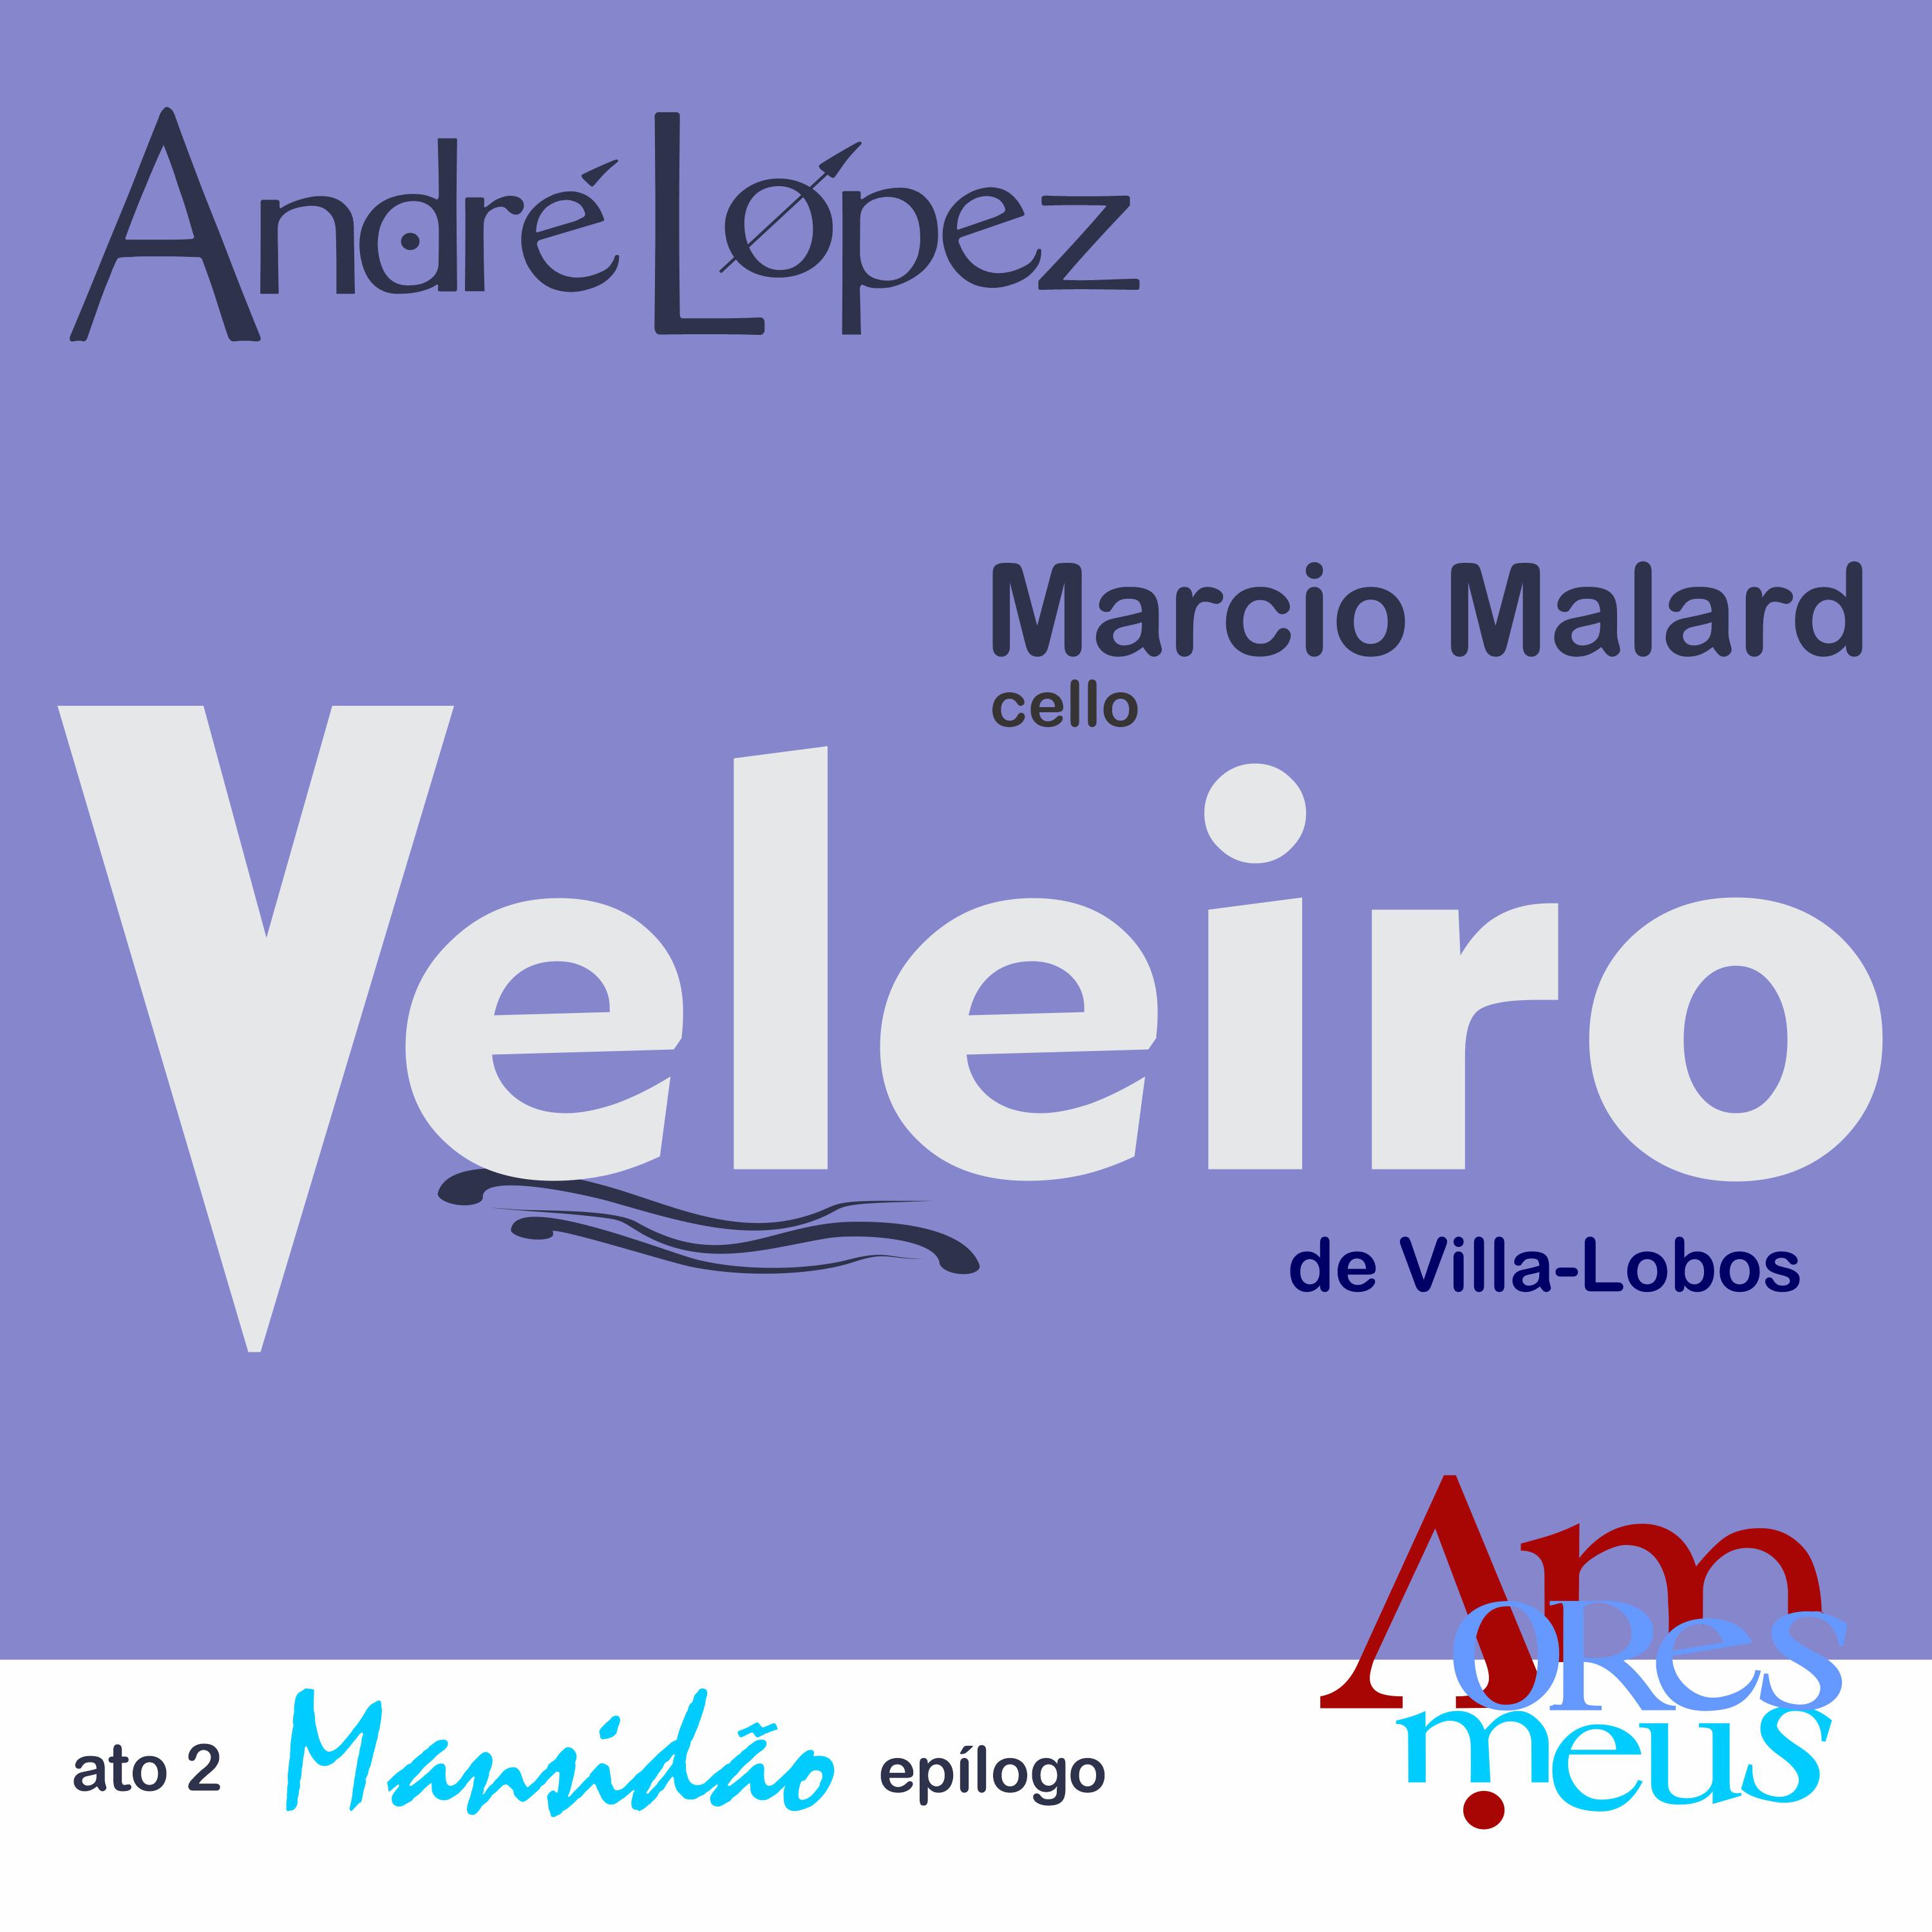 Ato 2: Epílogo - Veleiro, com Márcio Malard